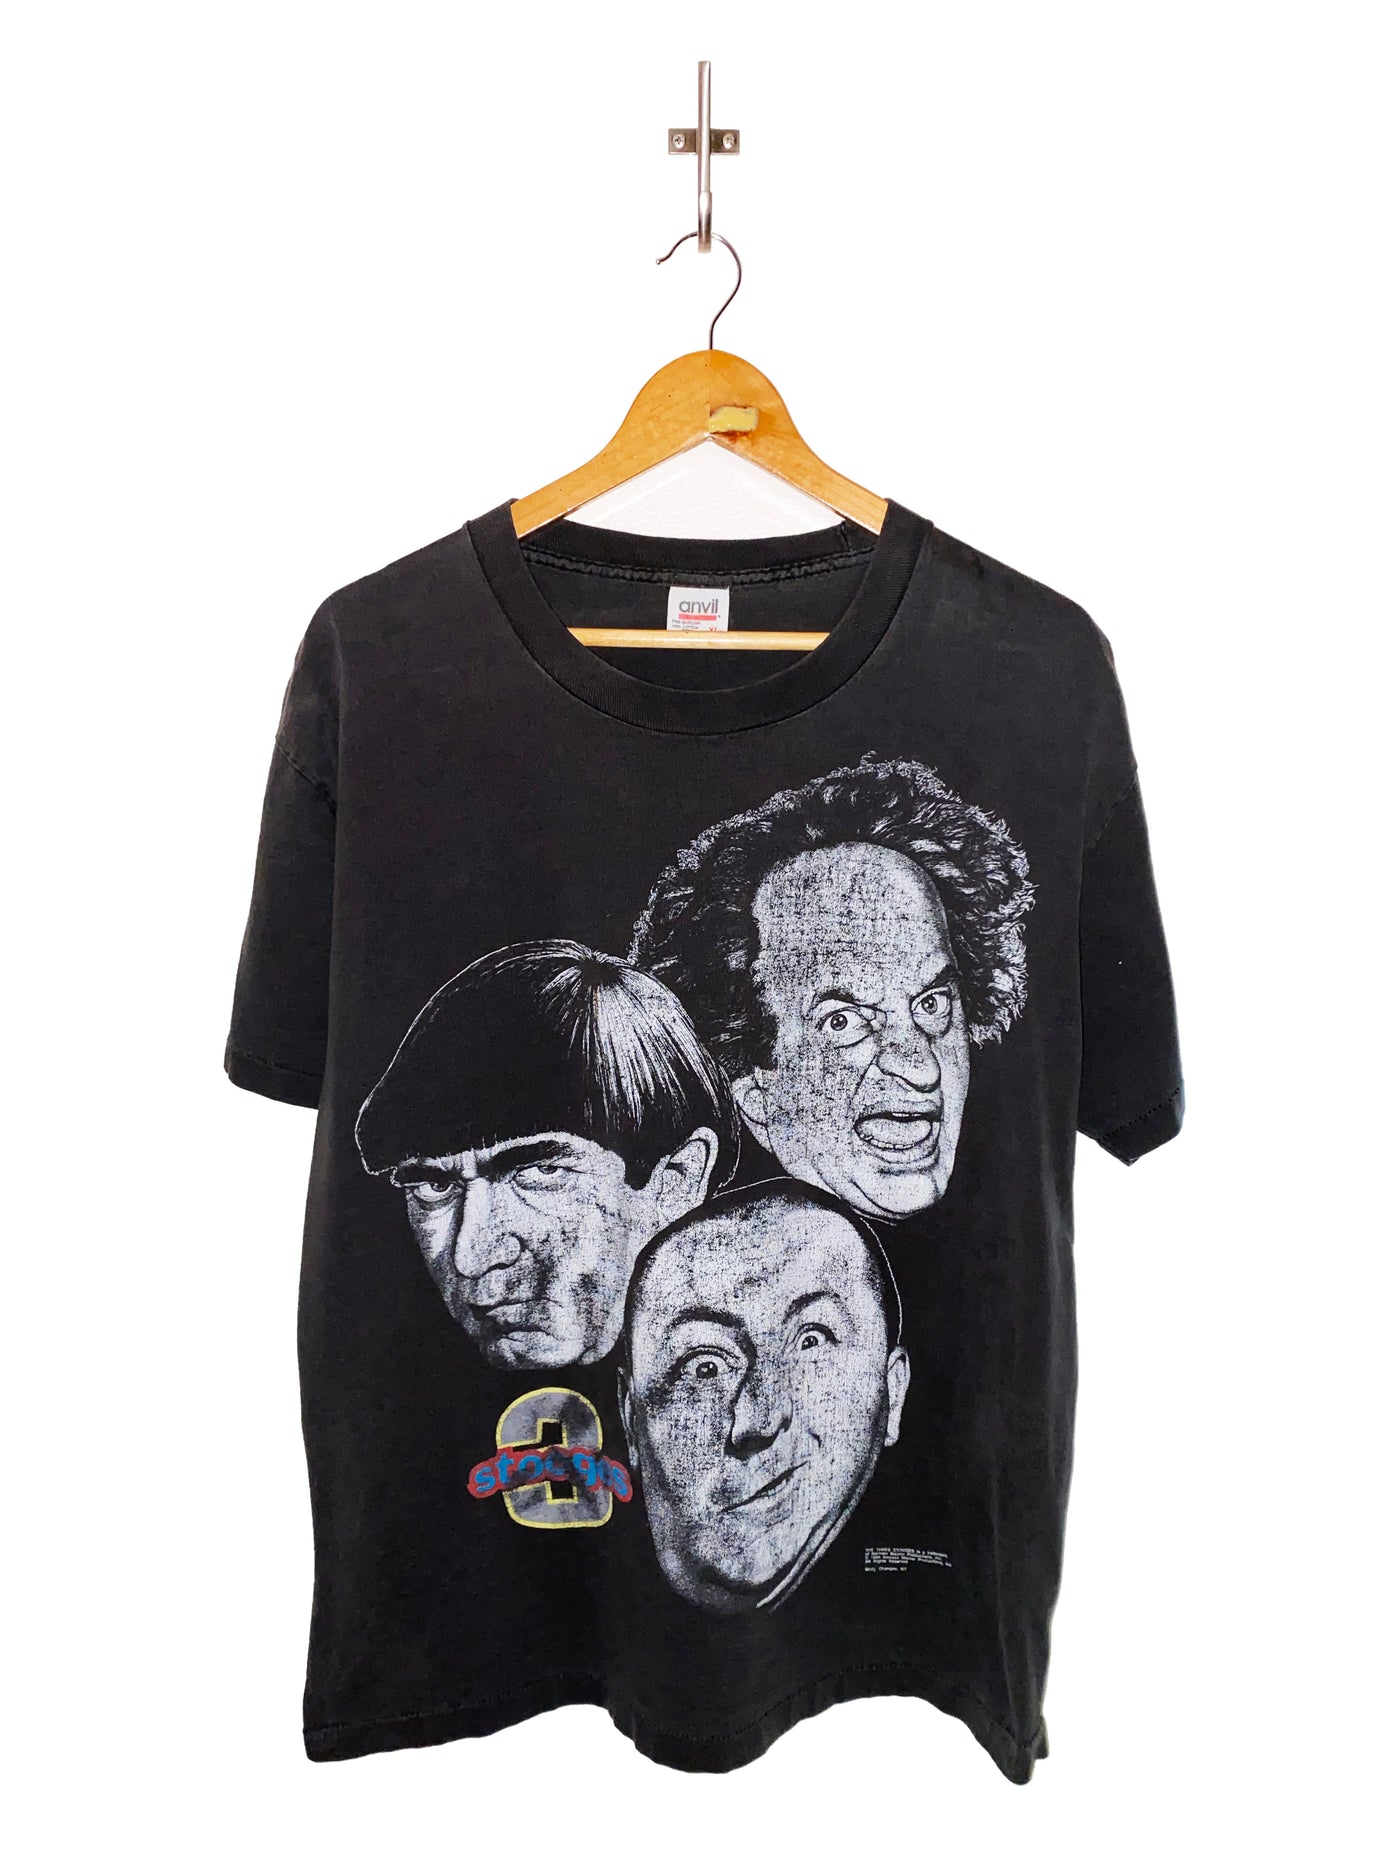 Vintage 1994 3 Stooges T-Shirt